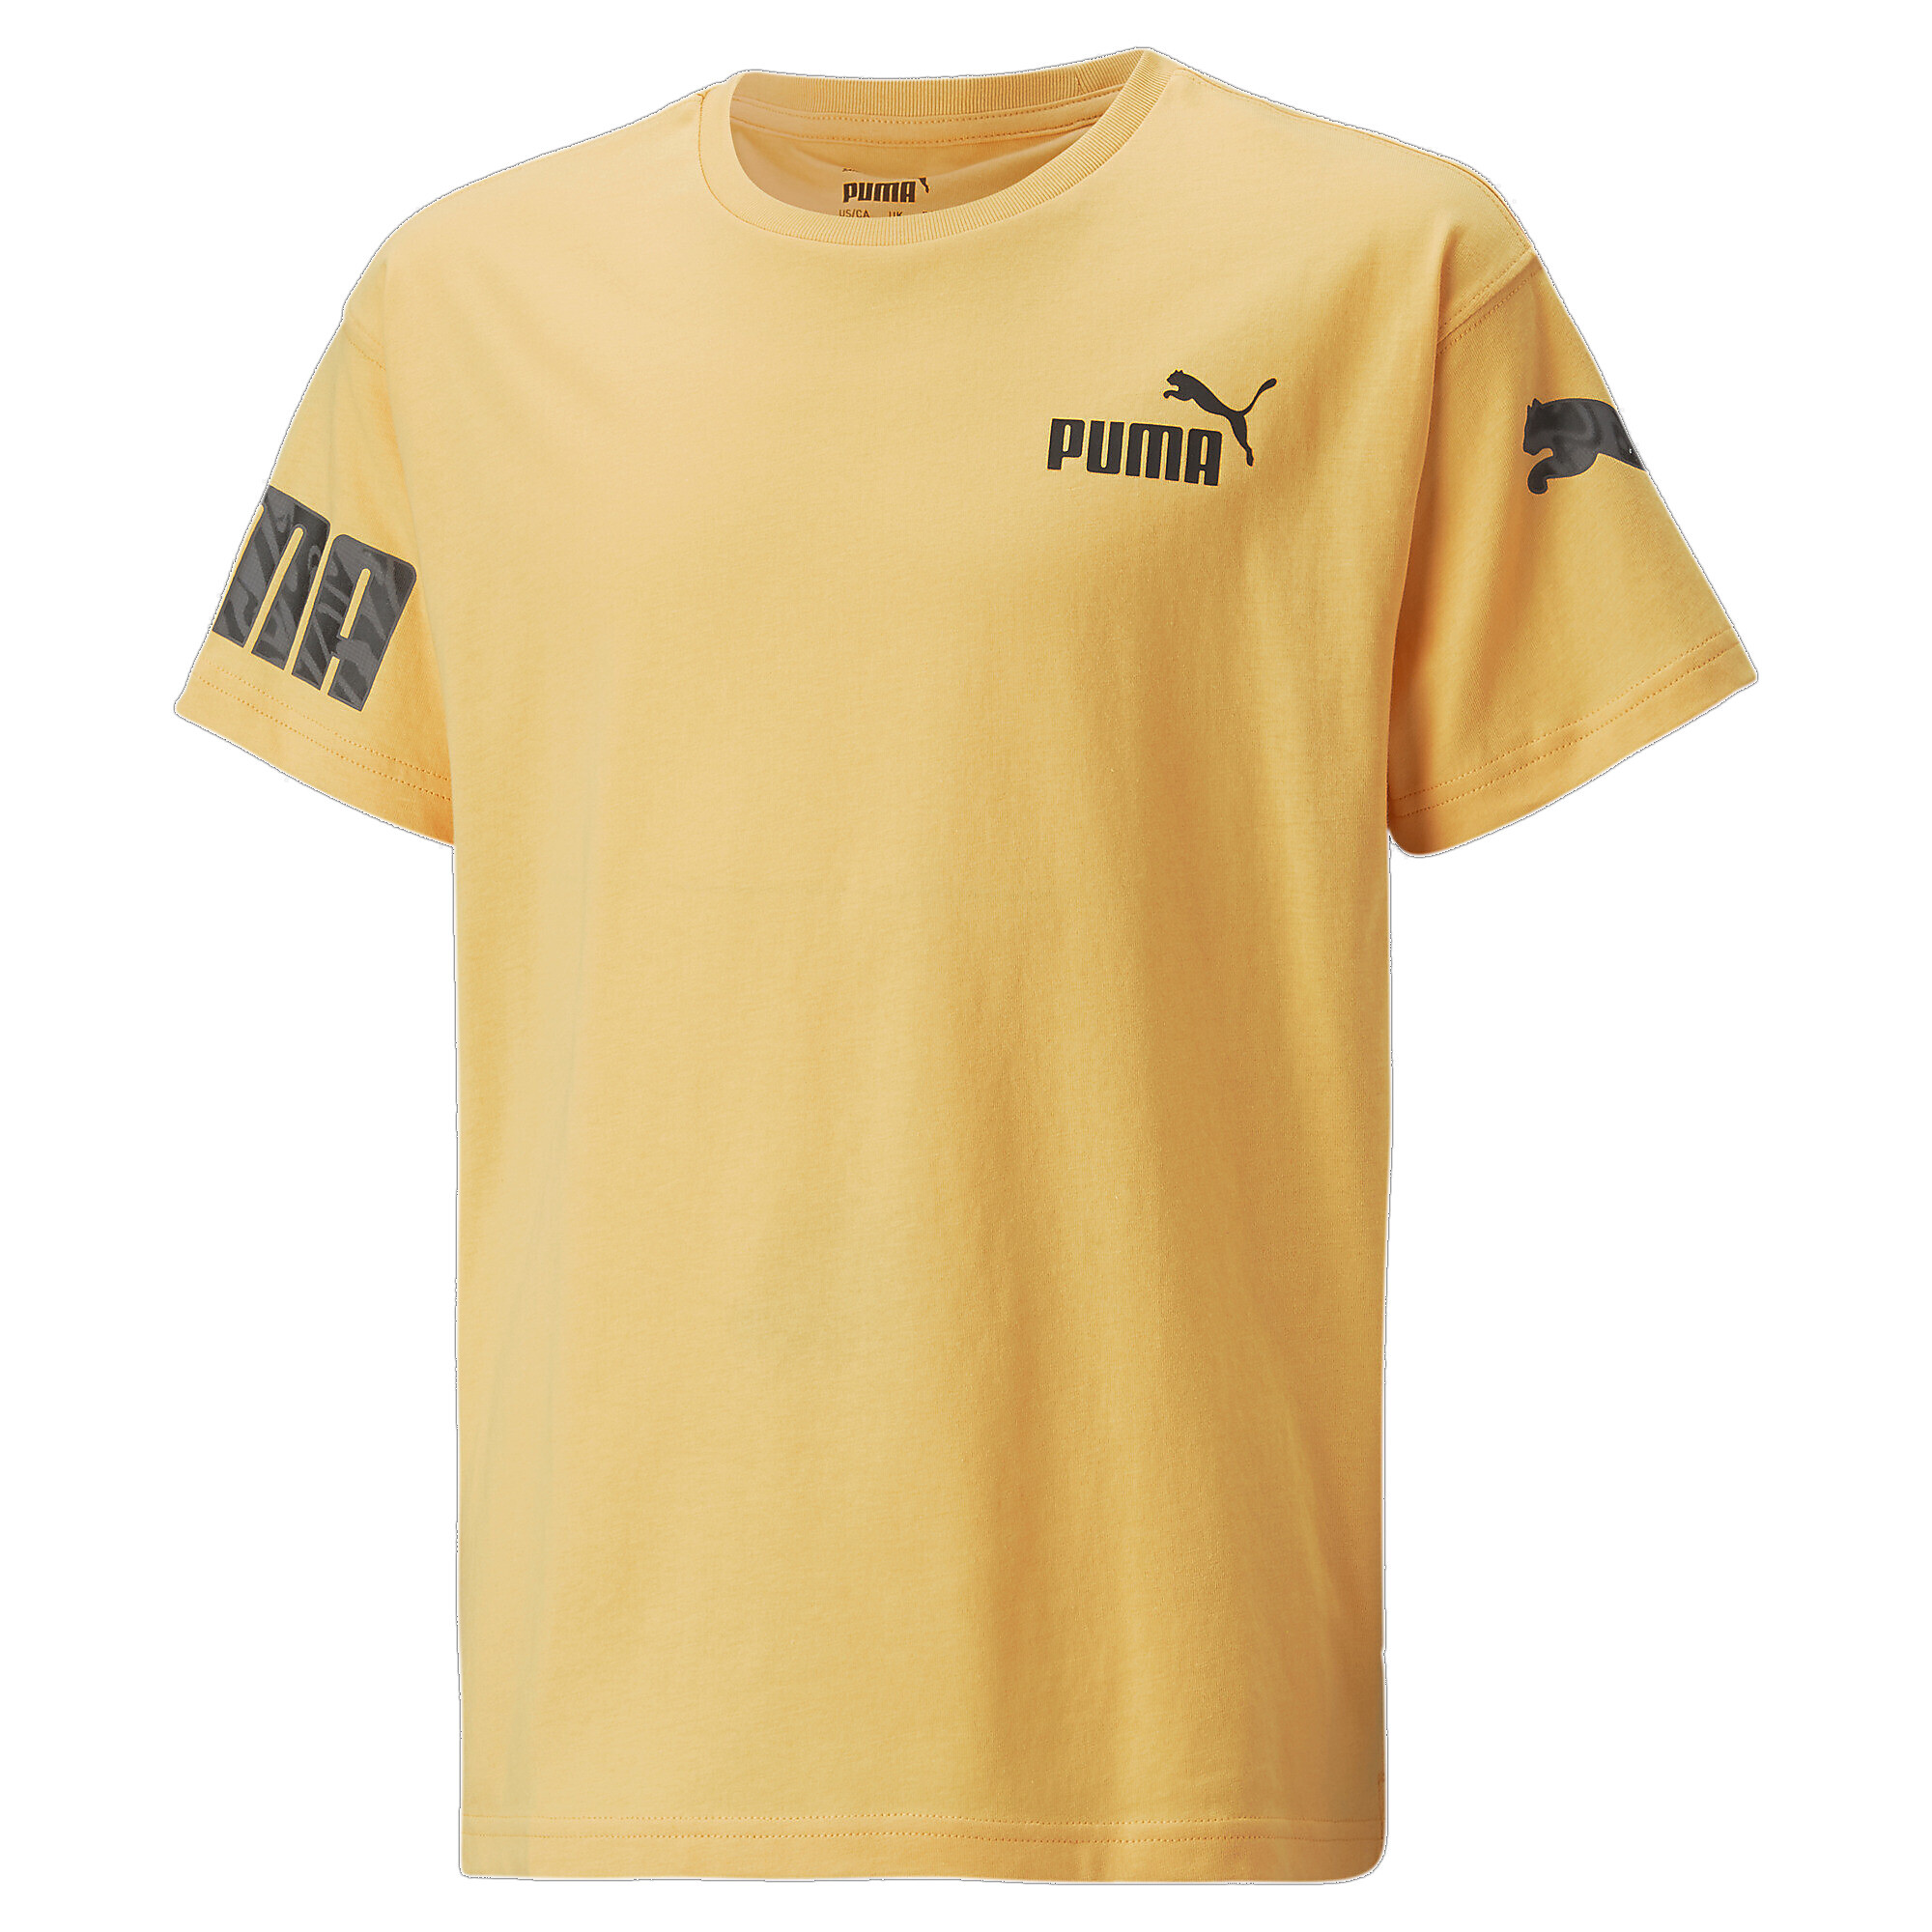 30%OFF！ プーマ キッズ ボーイズ PUMA POWER サマー 半袖 Tシャツ 120-160cm メンズ Mustard Seed ｜PUMA.comの大画像